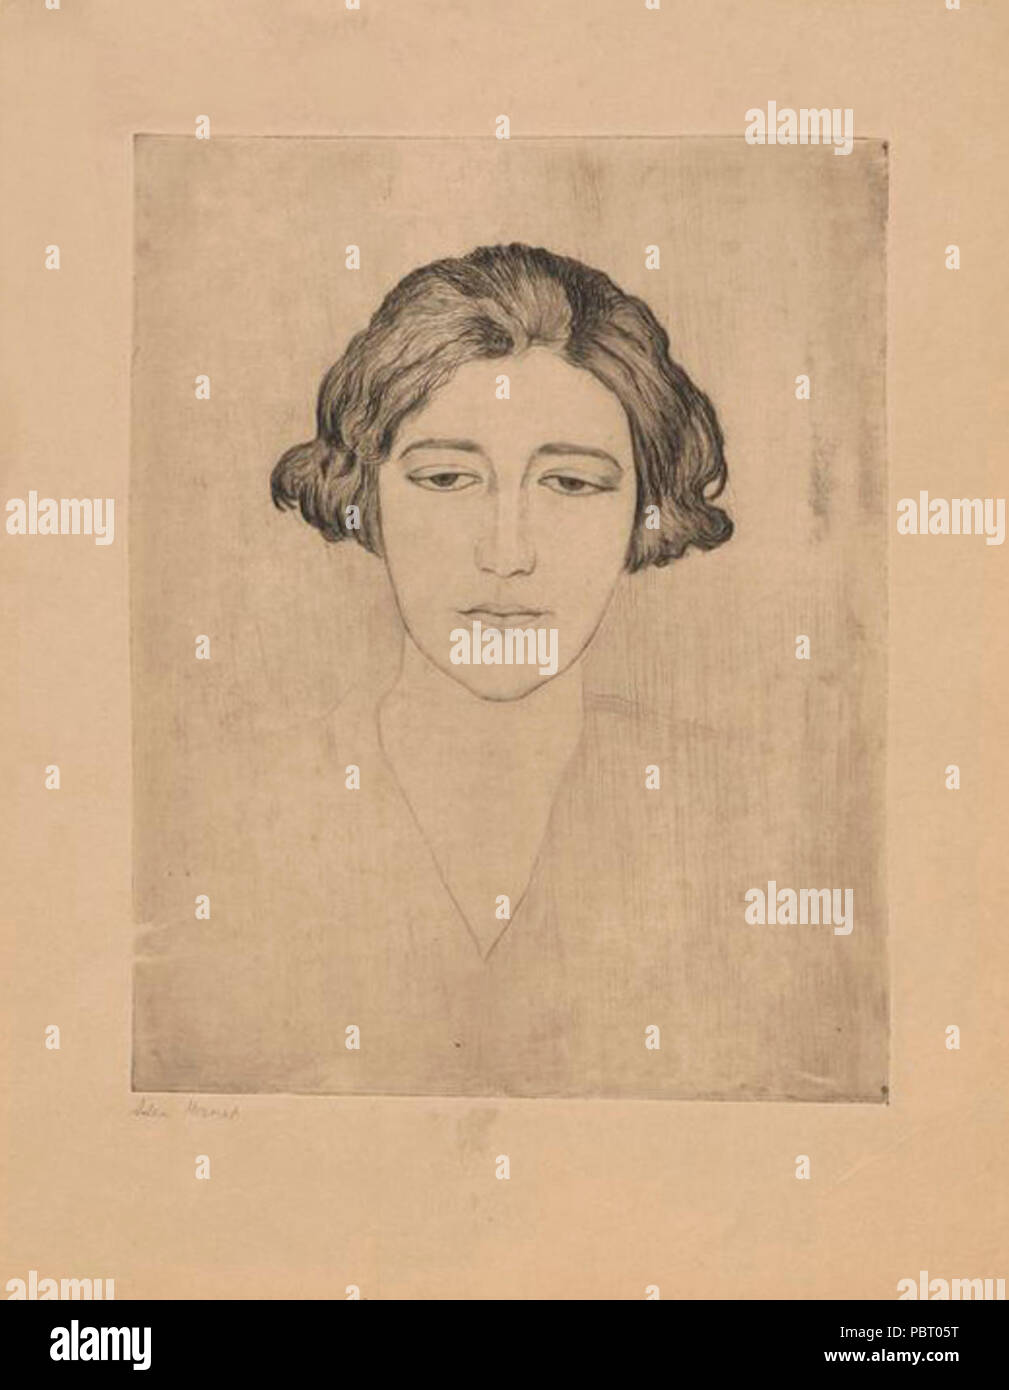 Adam Herszaft - Portret kobiety ze zmrużonymi oczami. Foto Stock